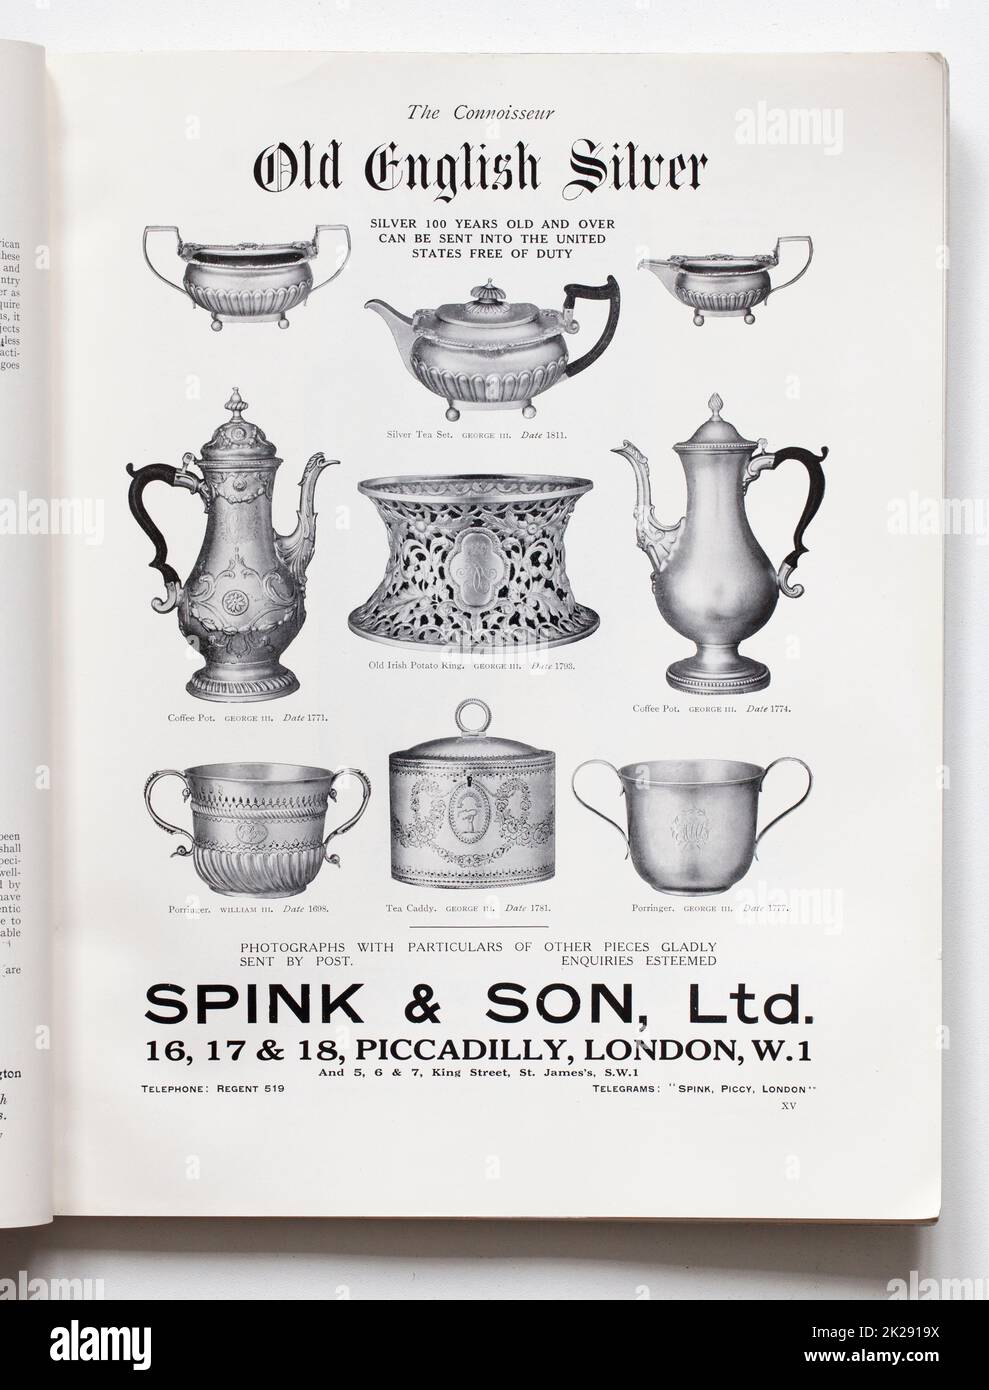 Anuncio de Old English Silver de Spink and Son en la revista Connoisseur Foto de stock